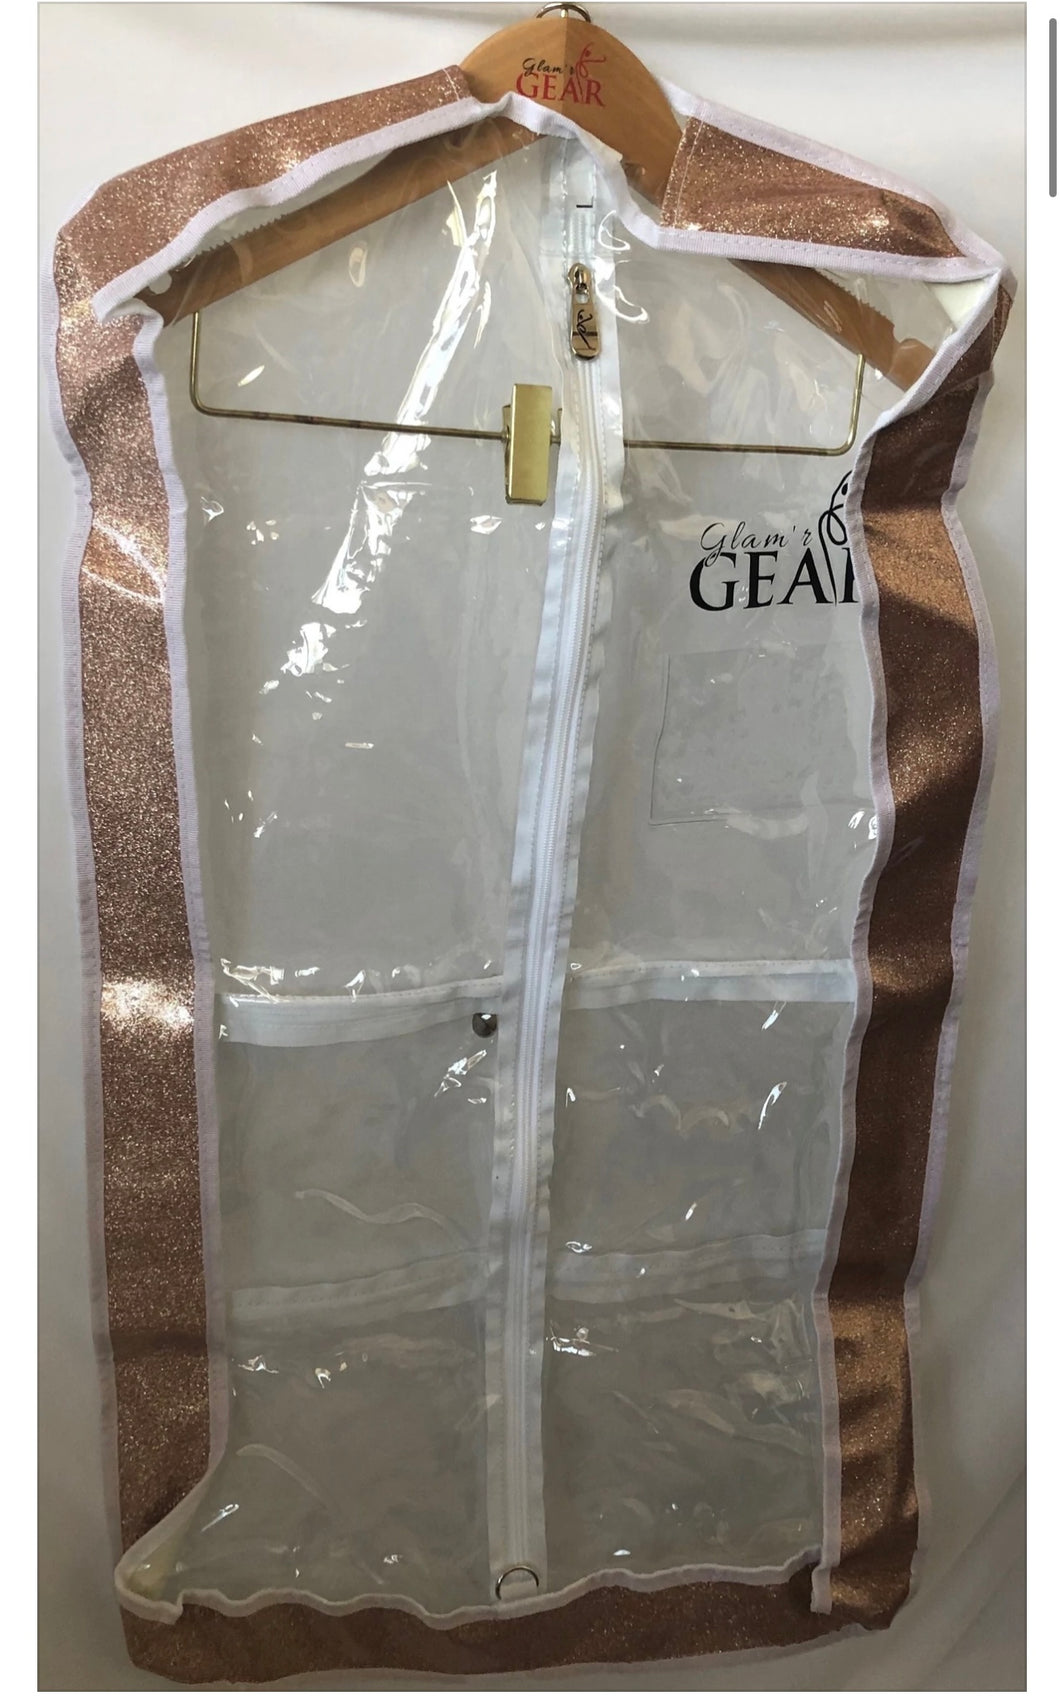 Glam’r Gear Garment Bag